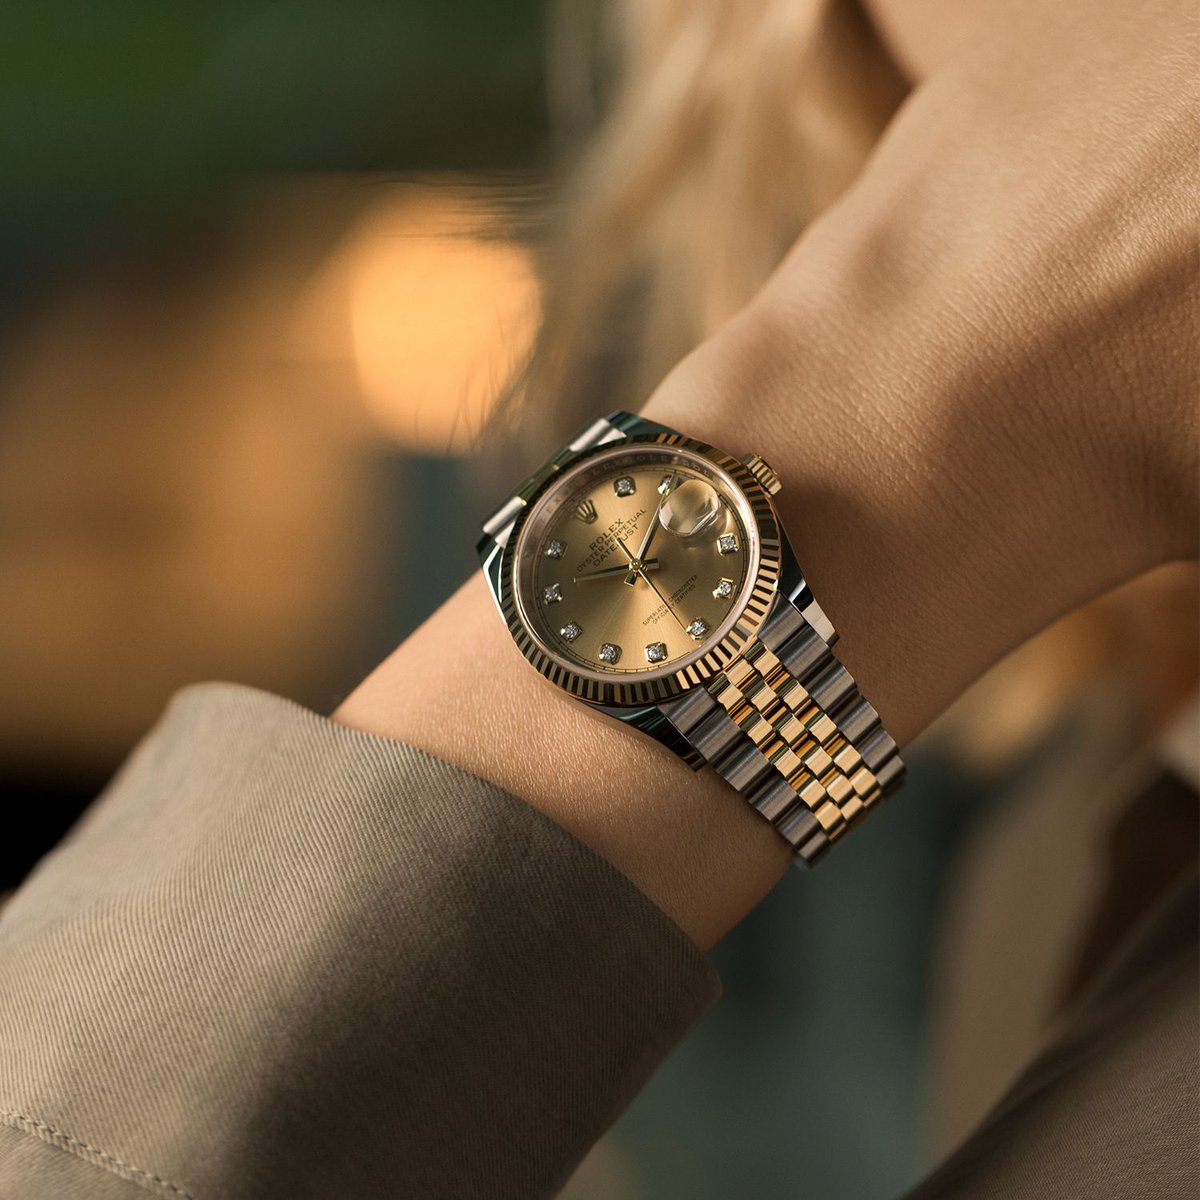 Rolex hãng đồng hồ thế giới nổi tiếng tại Việt Nam